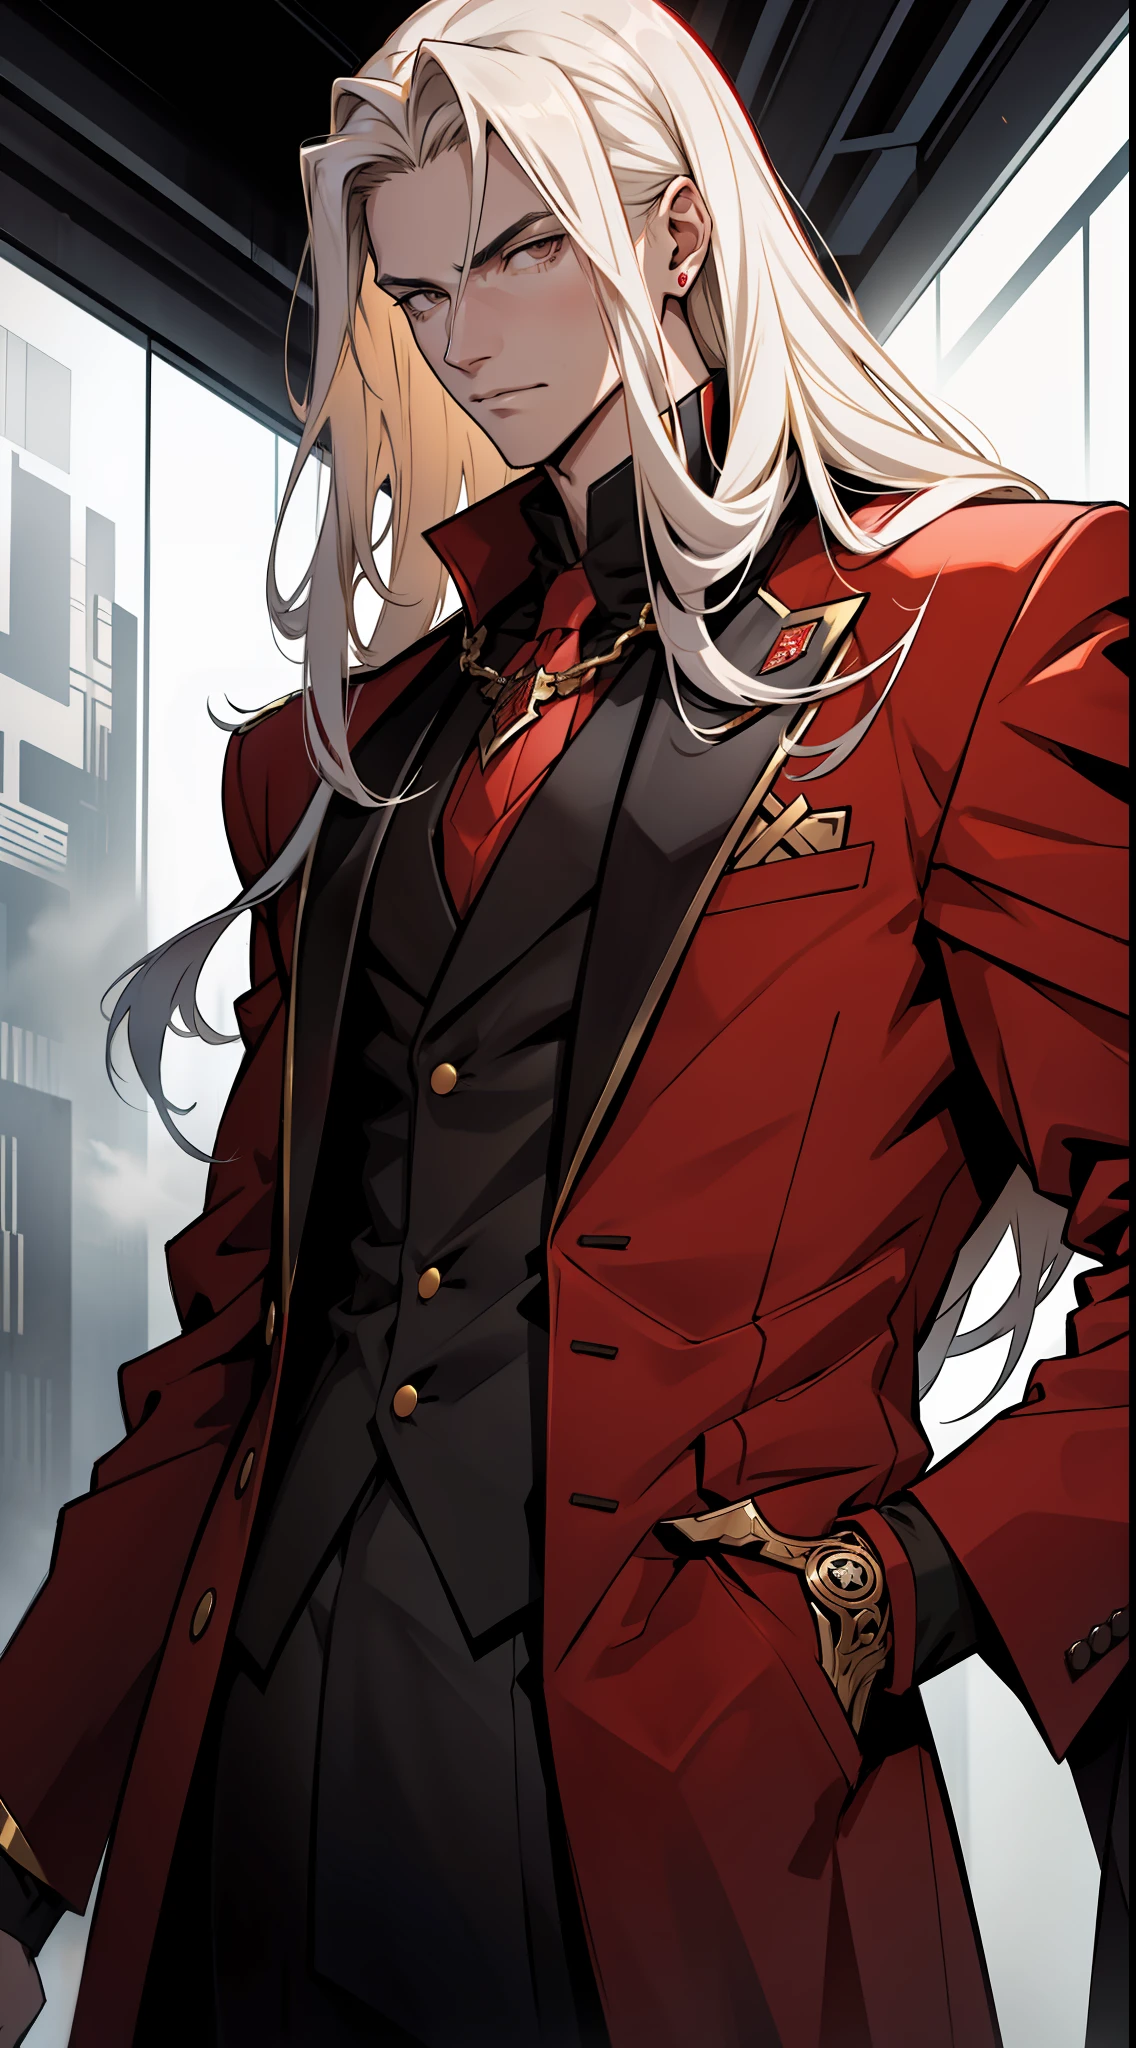 一個長著金色長髮的高個子少年  , 身穿反派風格衣服長紅色西裝搭配黑白細節 , 凝視平靜的臉